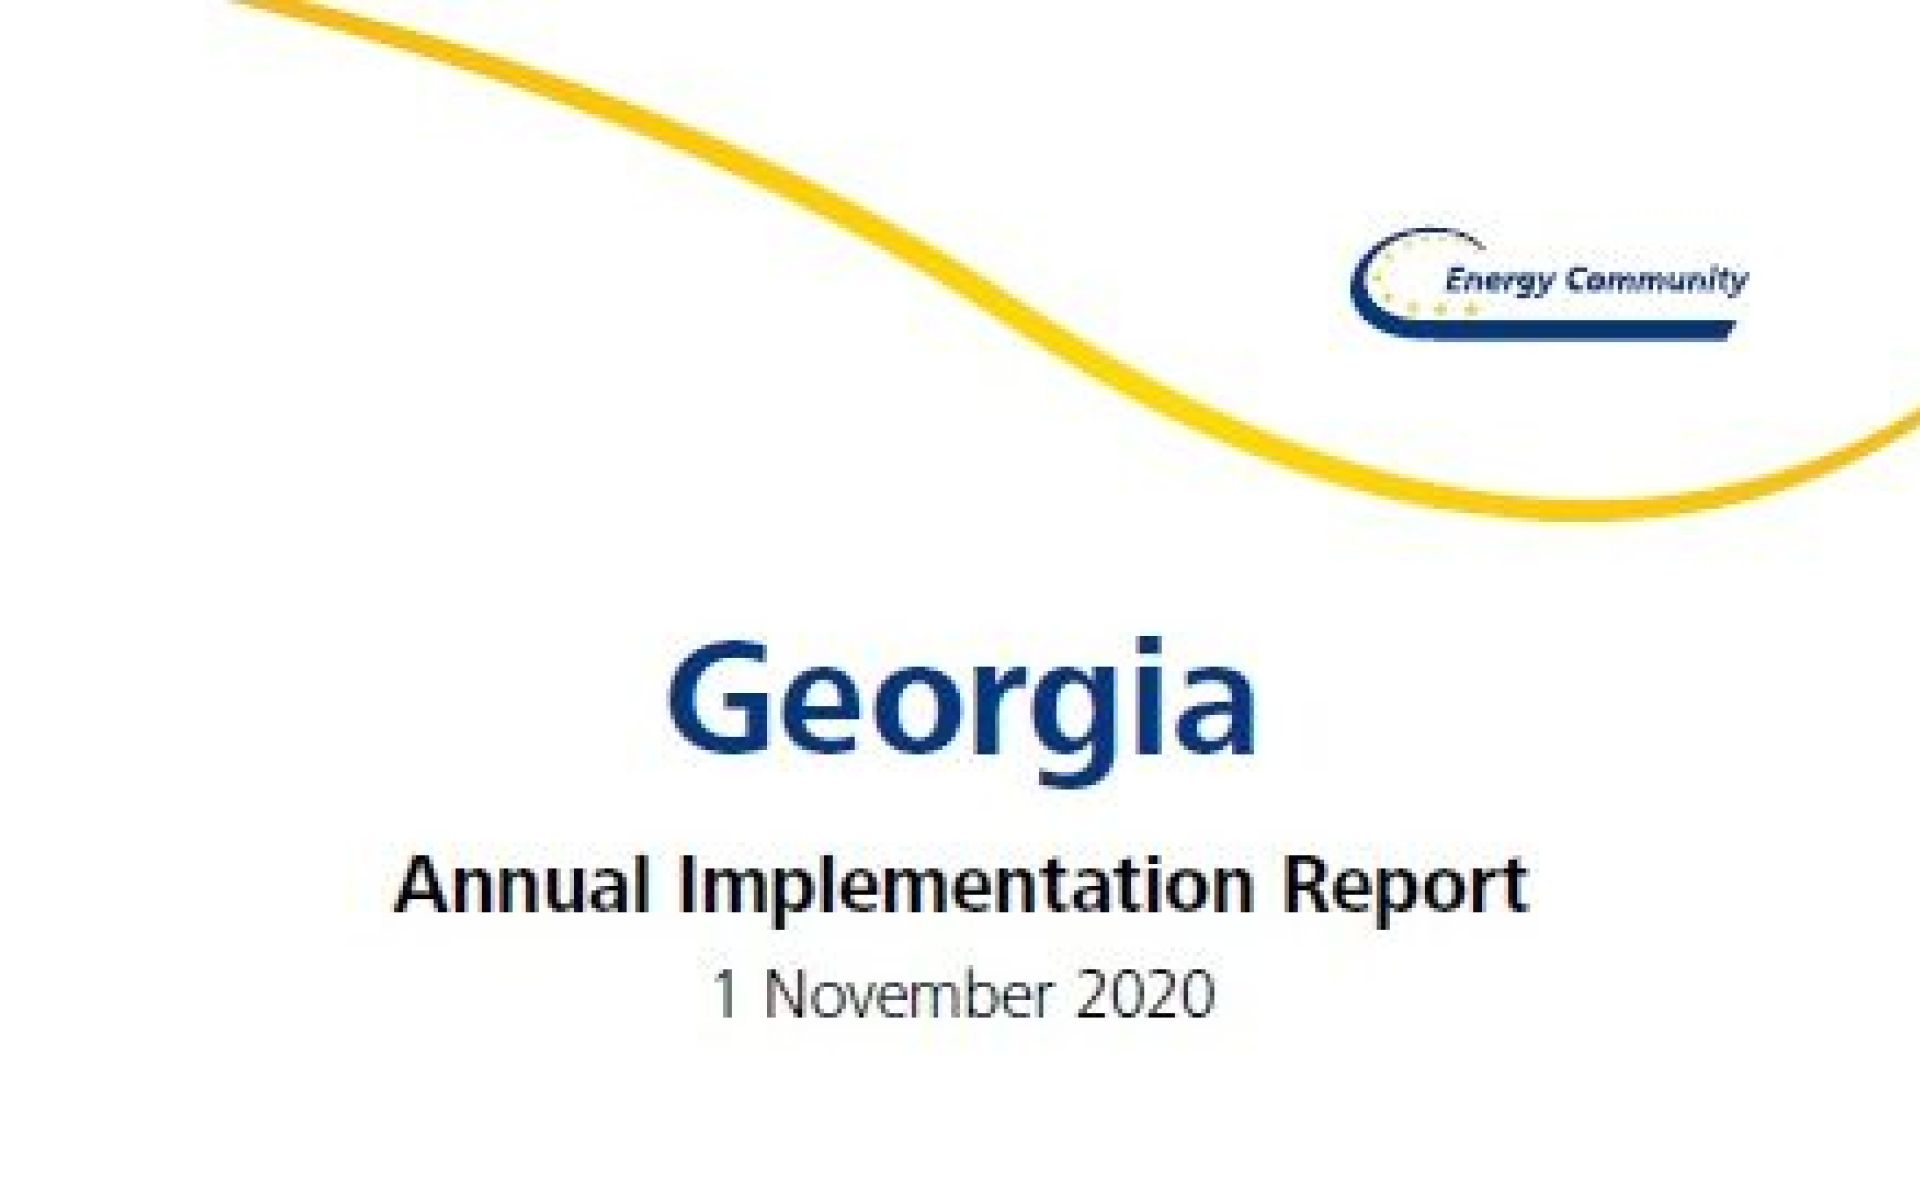 The Energy Community Secretariat’s Annual Implementation Report 2020 – Georgia